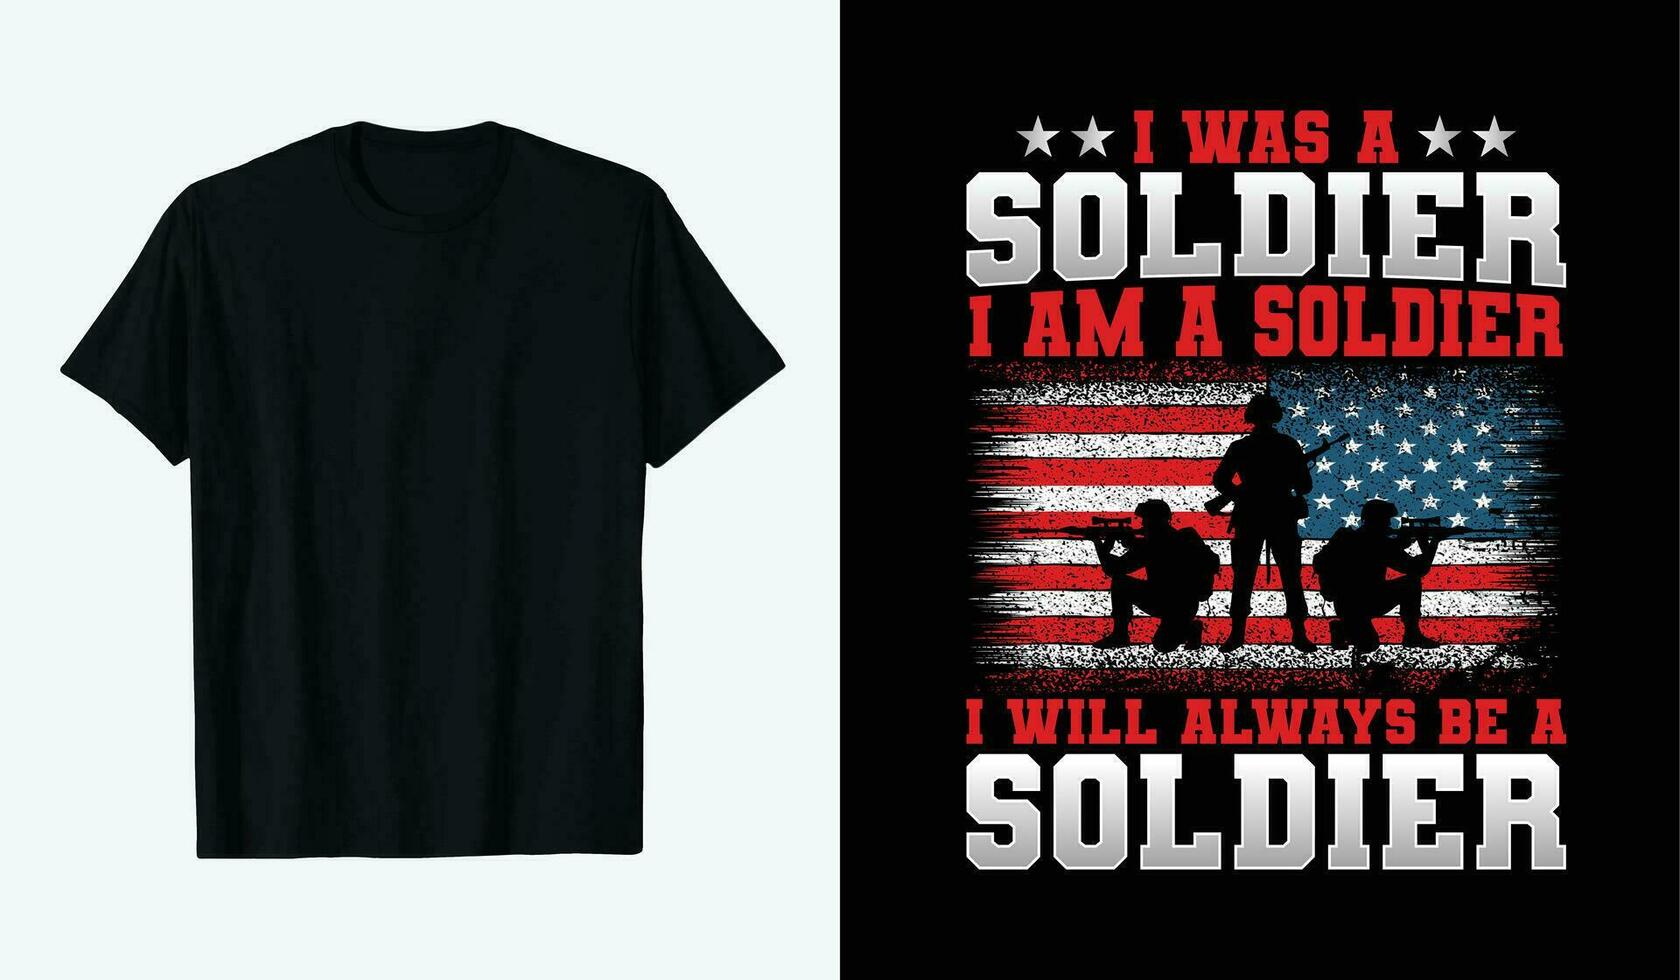 Verenigde Staten van Amerika veteranen dag t-shirt ontwerp. ik was een soldaat ik ben een soldaat ik zullen altijd worden een soldaat vector